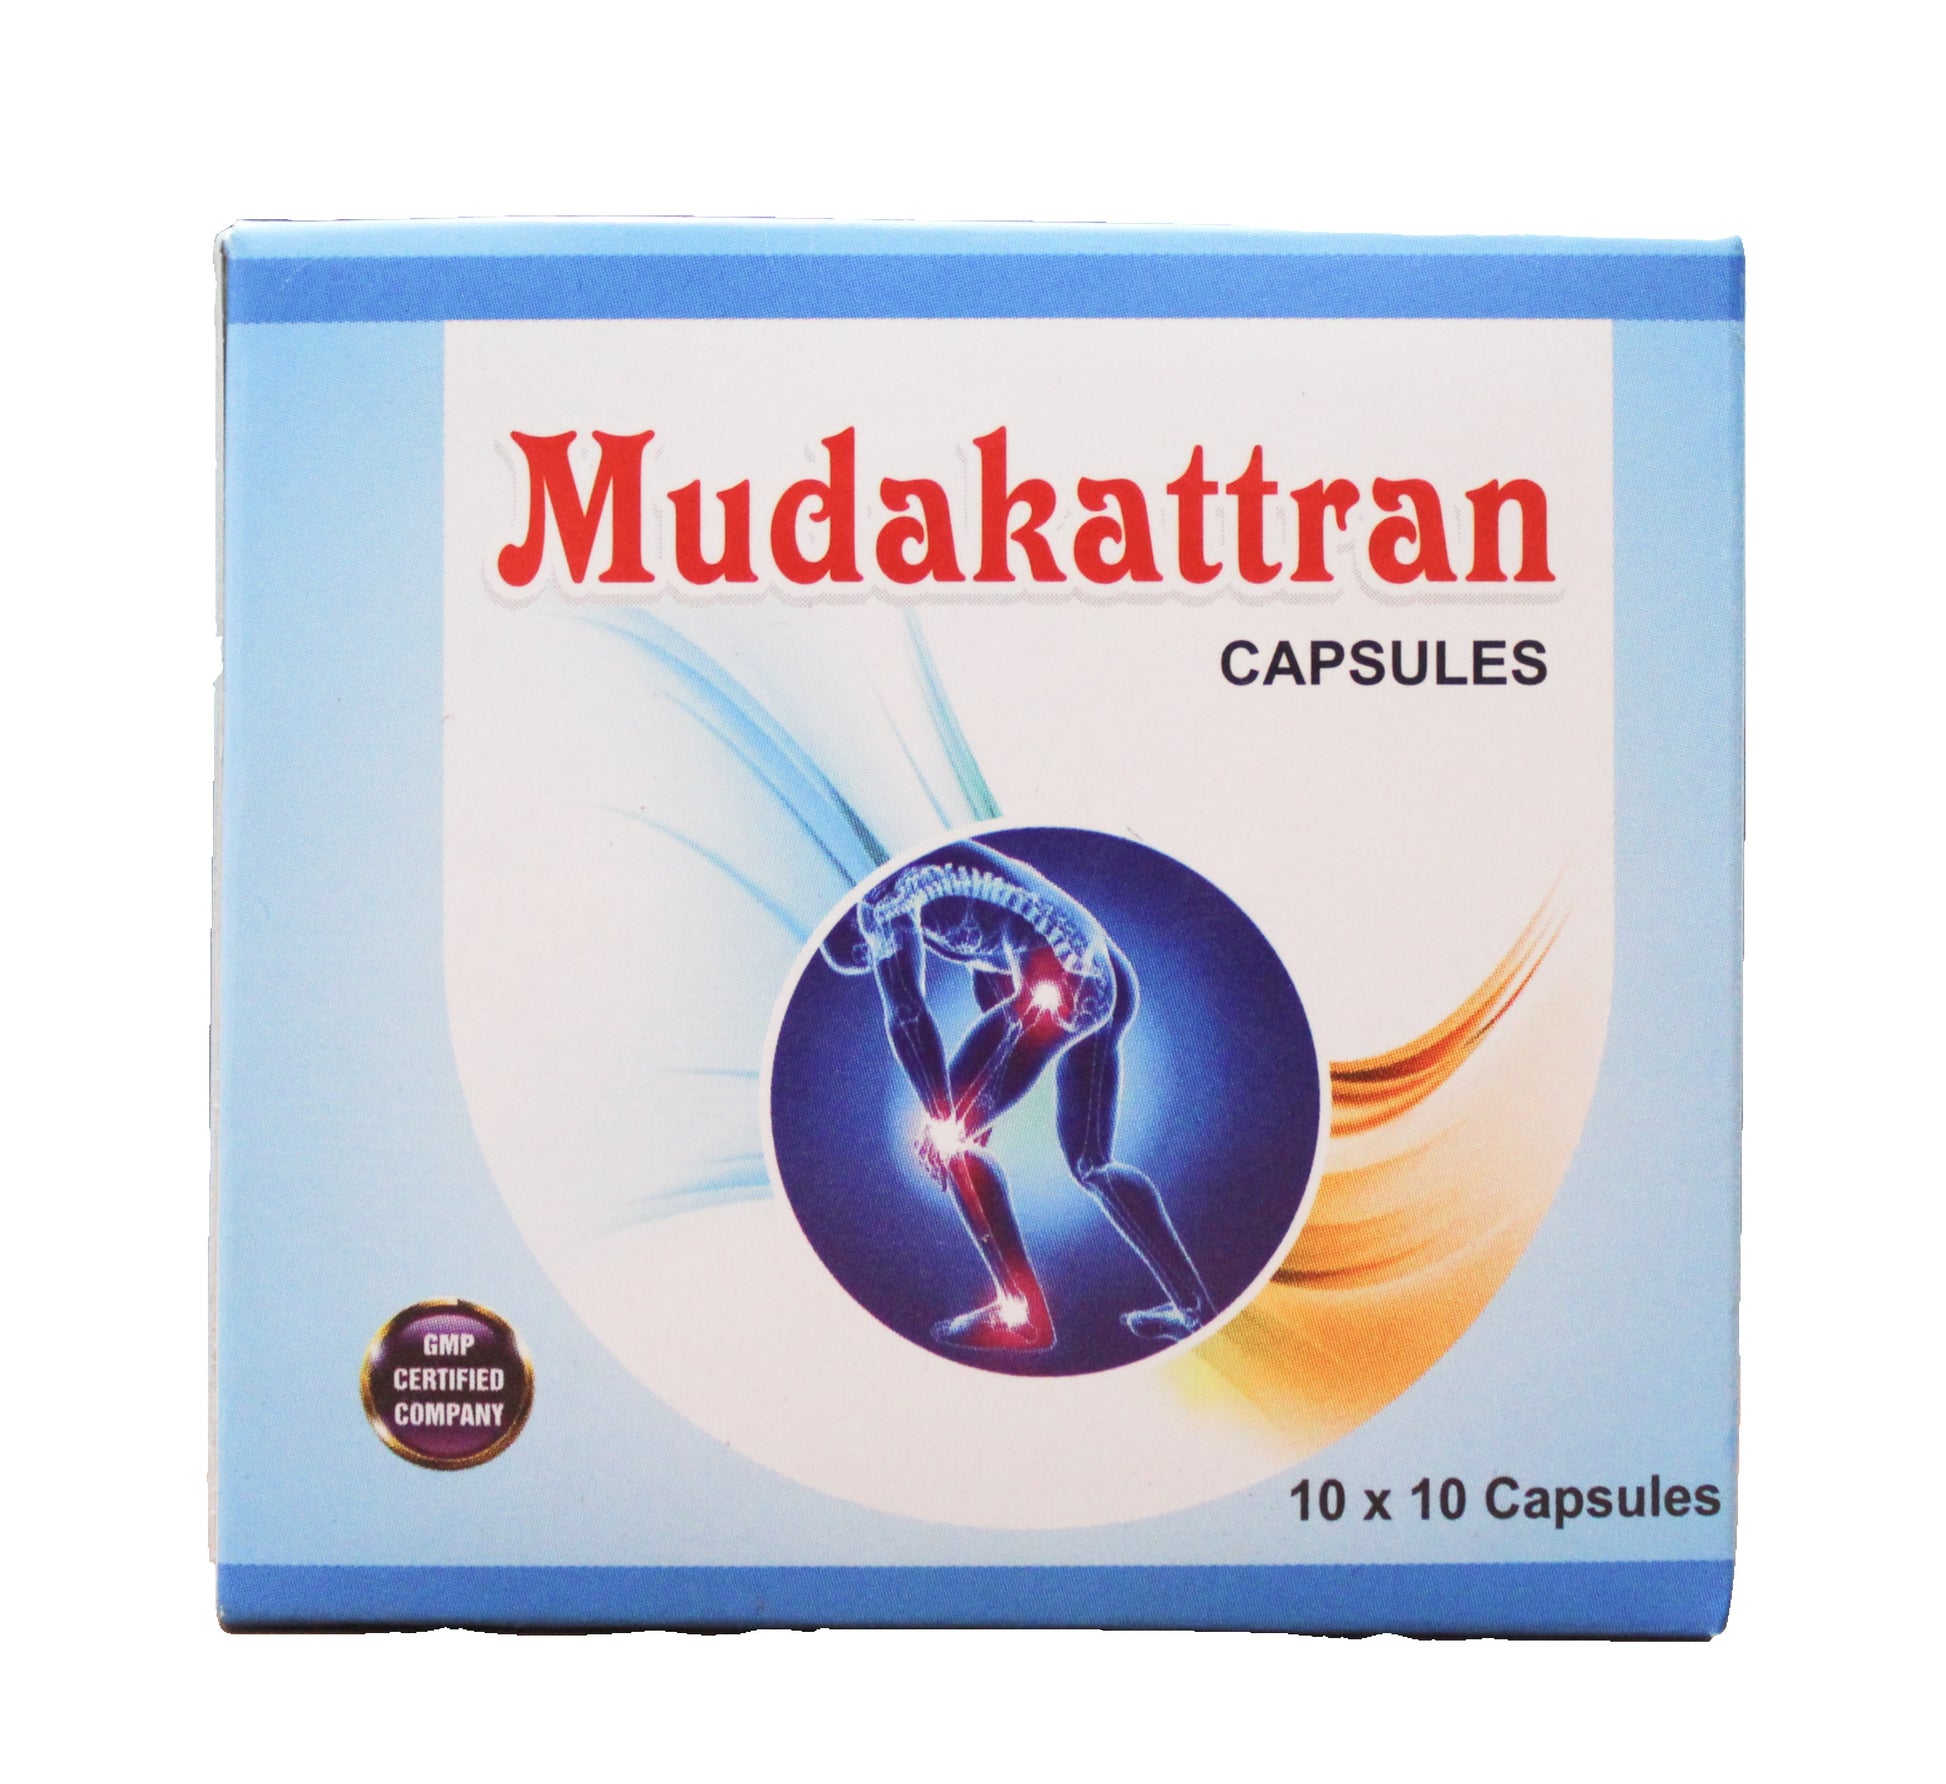 Mudakatran capsules - 10Capsules Gem Trease